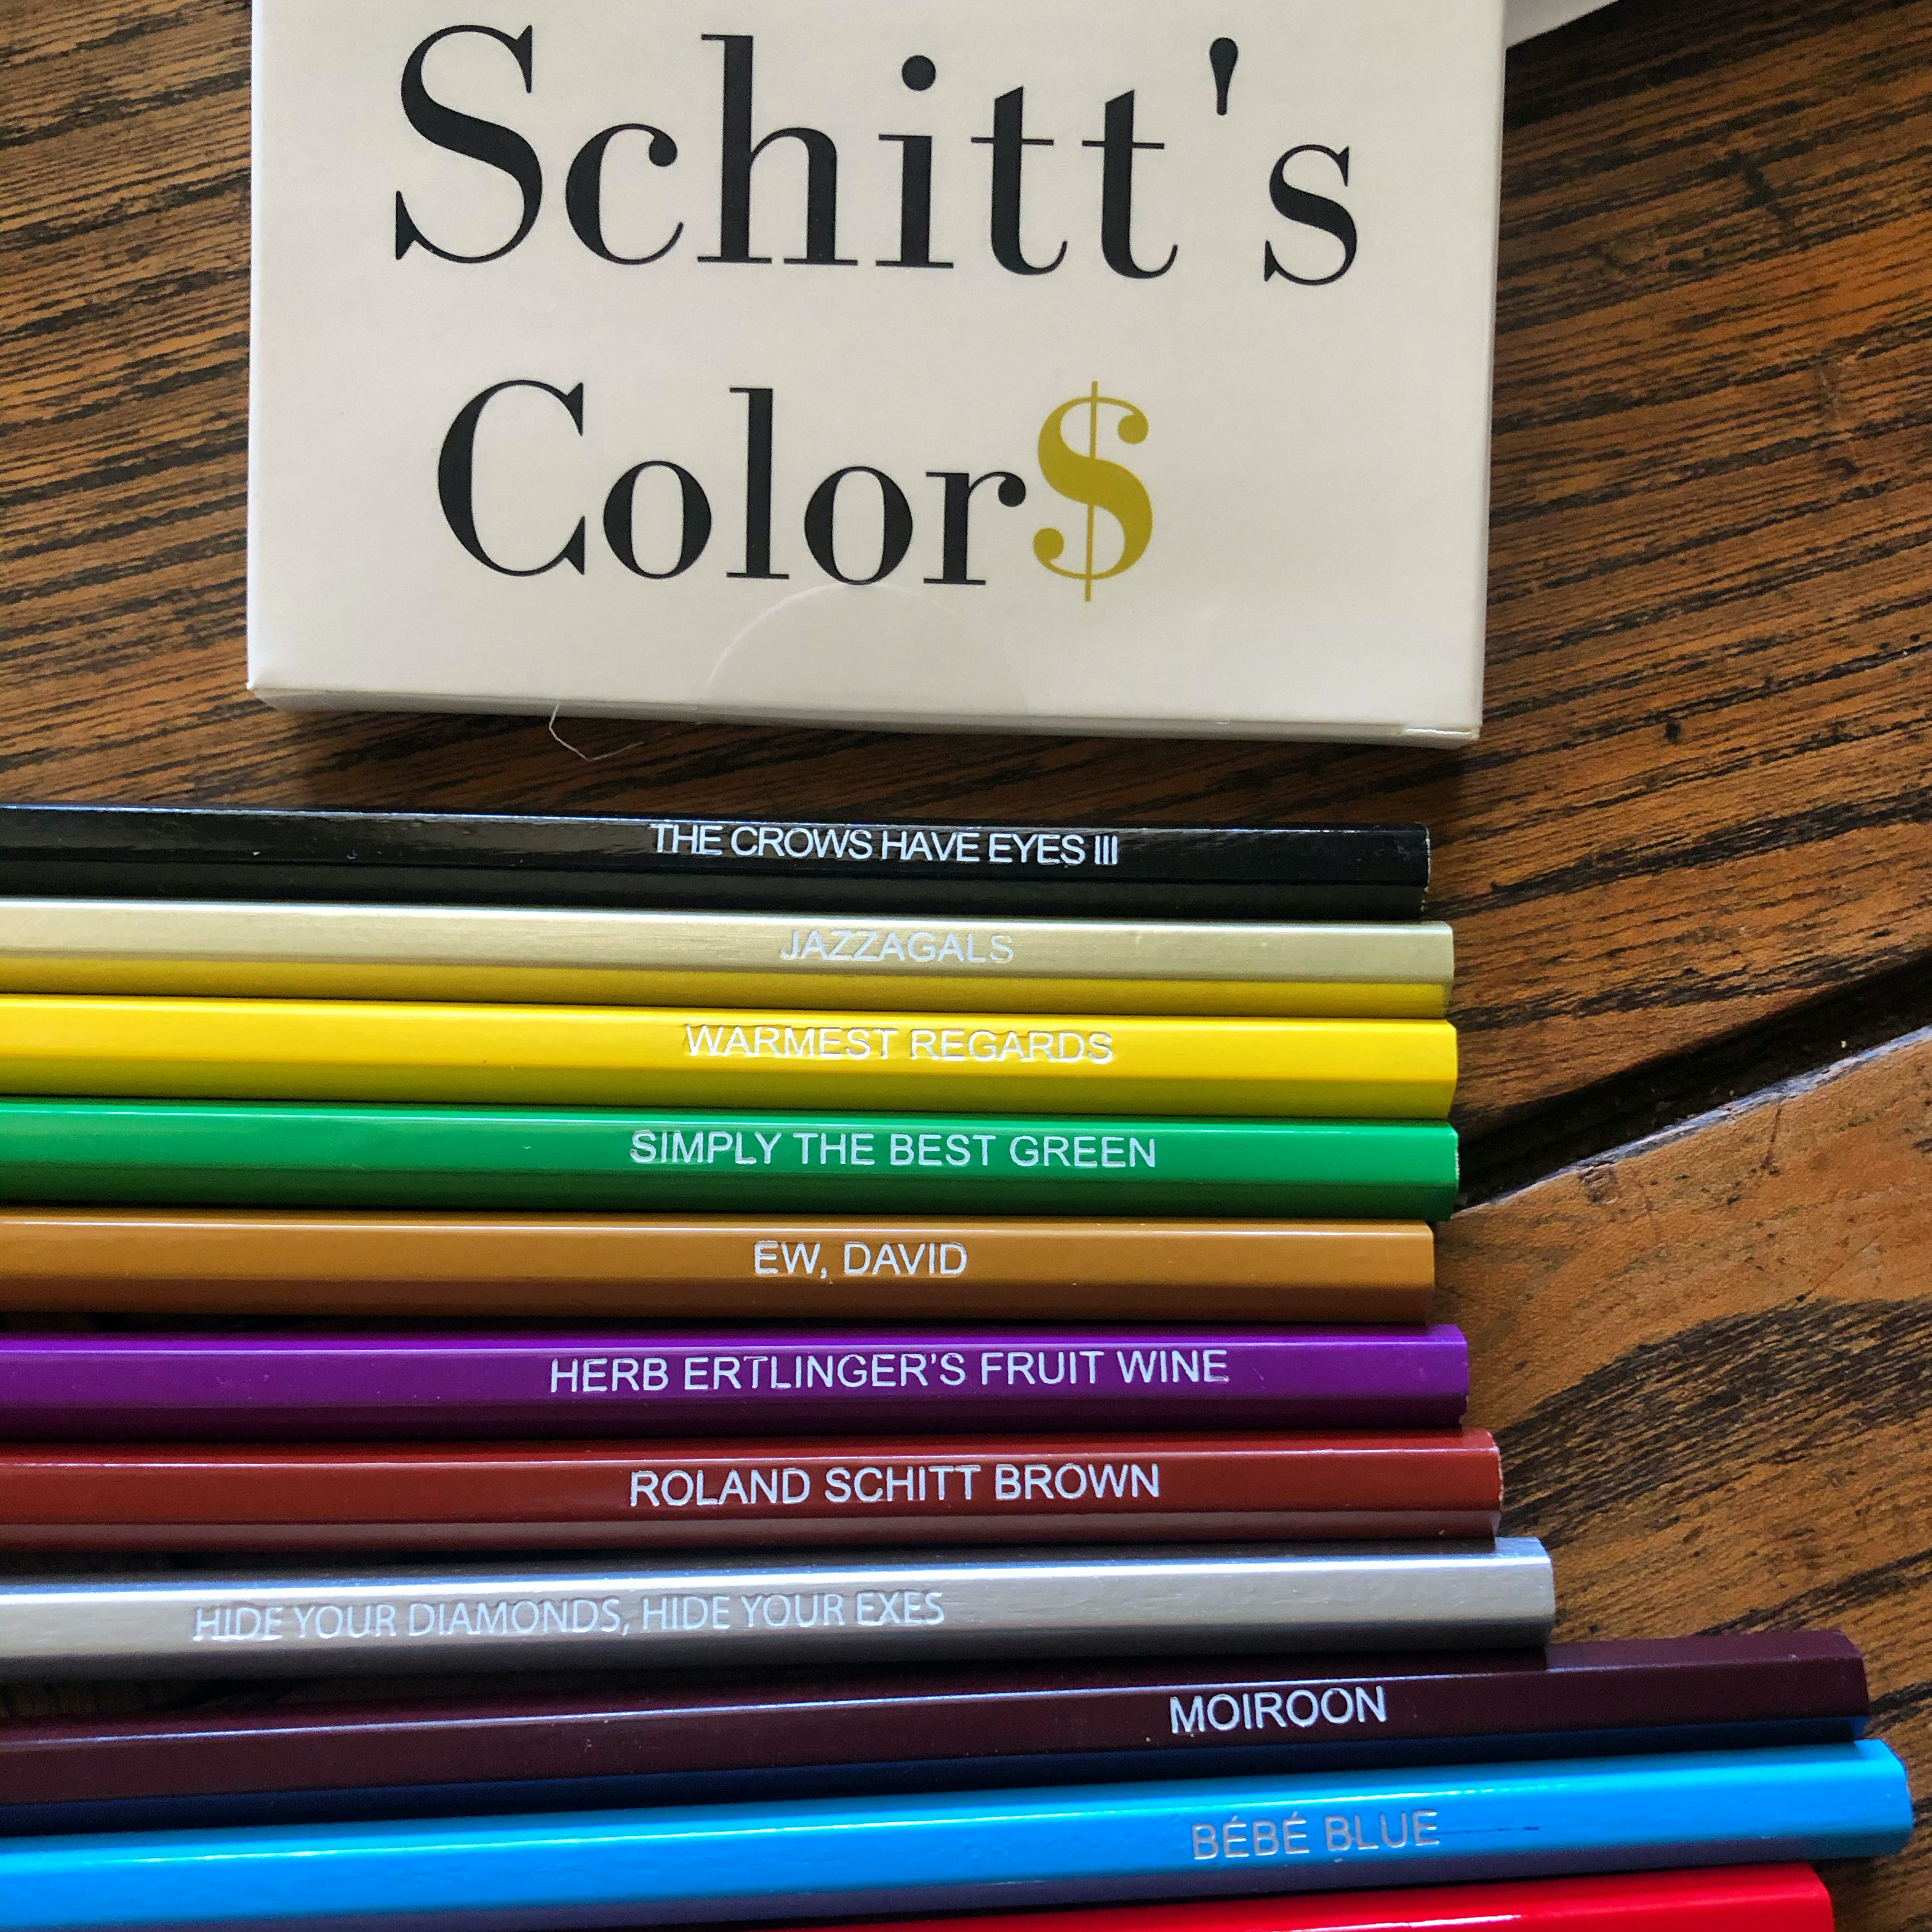 Schitt's Colors